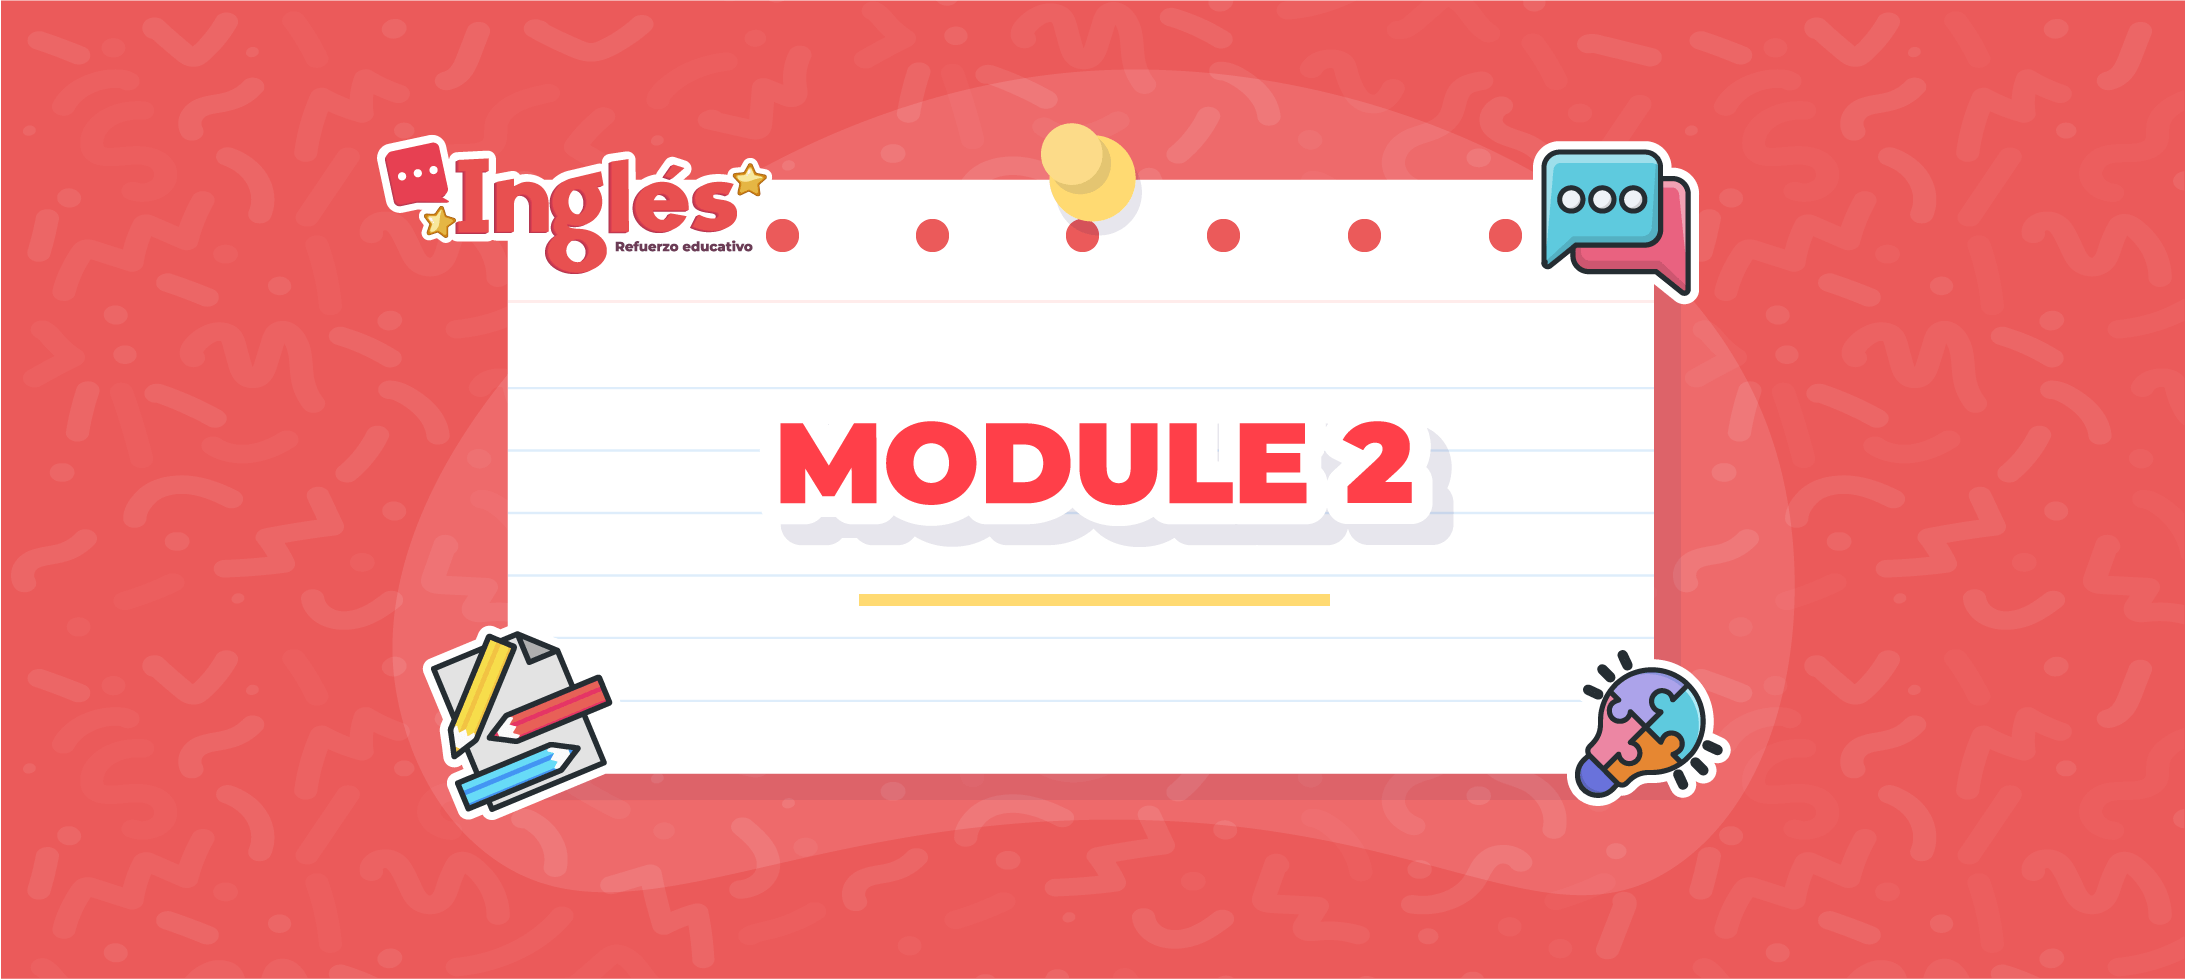 English: Module 2